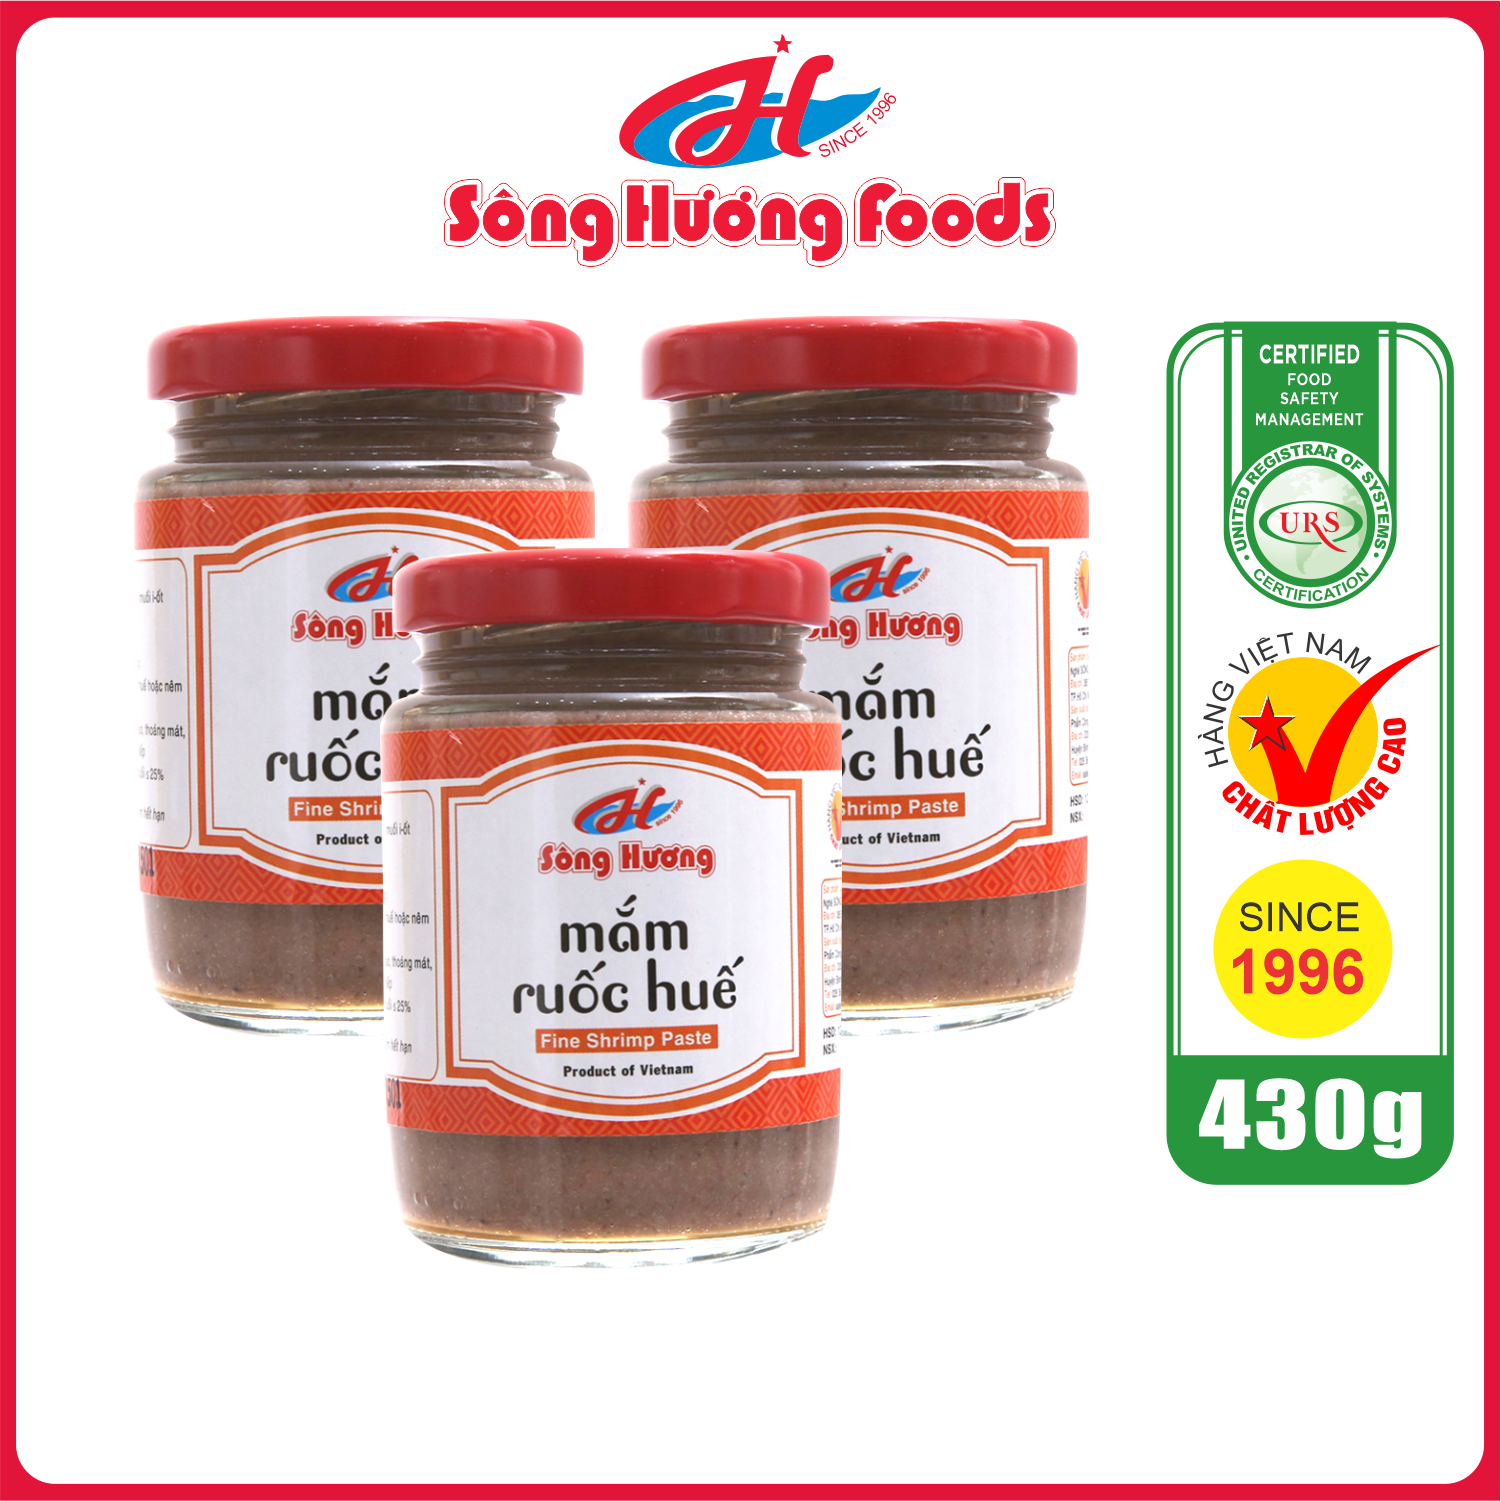 3 Hũ Mắm Ruốc Huế Sông Hương Foods Hũ 430g